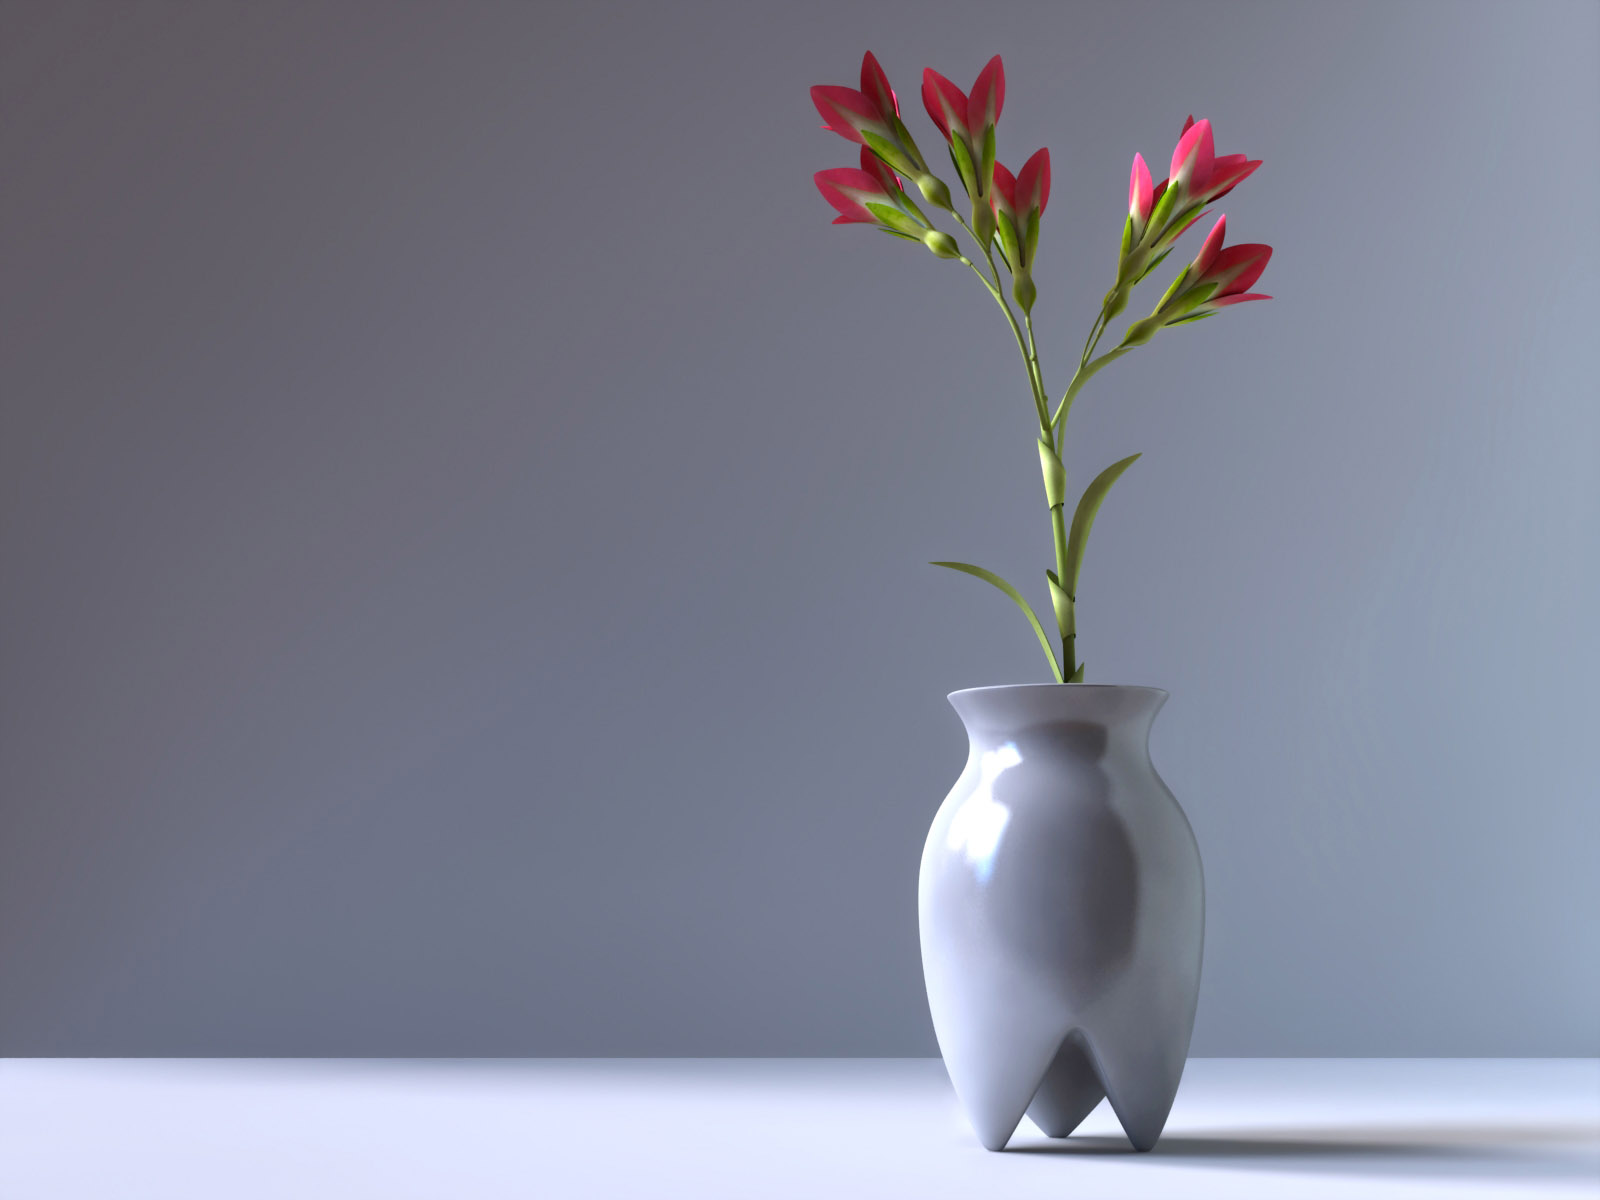 Vase Wallpaper Hd - Flower Vase Images Hd , HD Wallpaper & Backgrounds